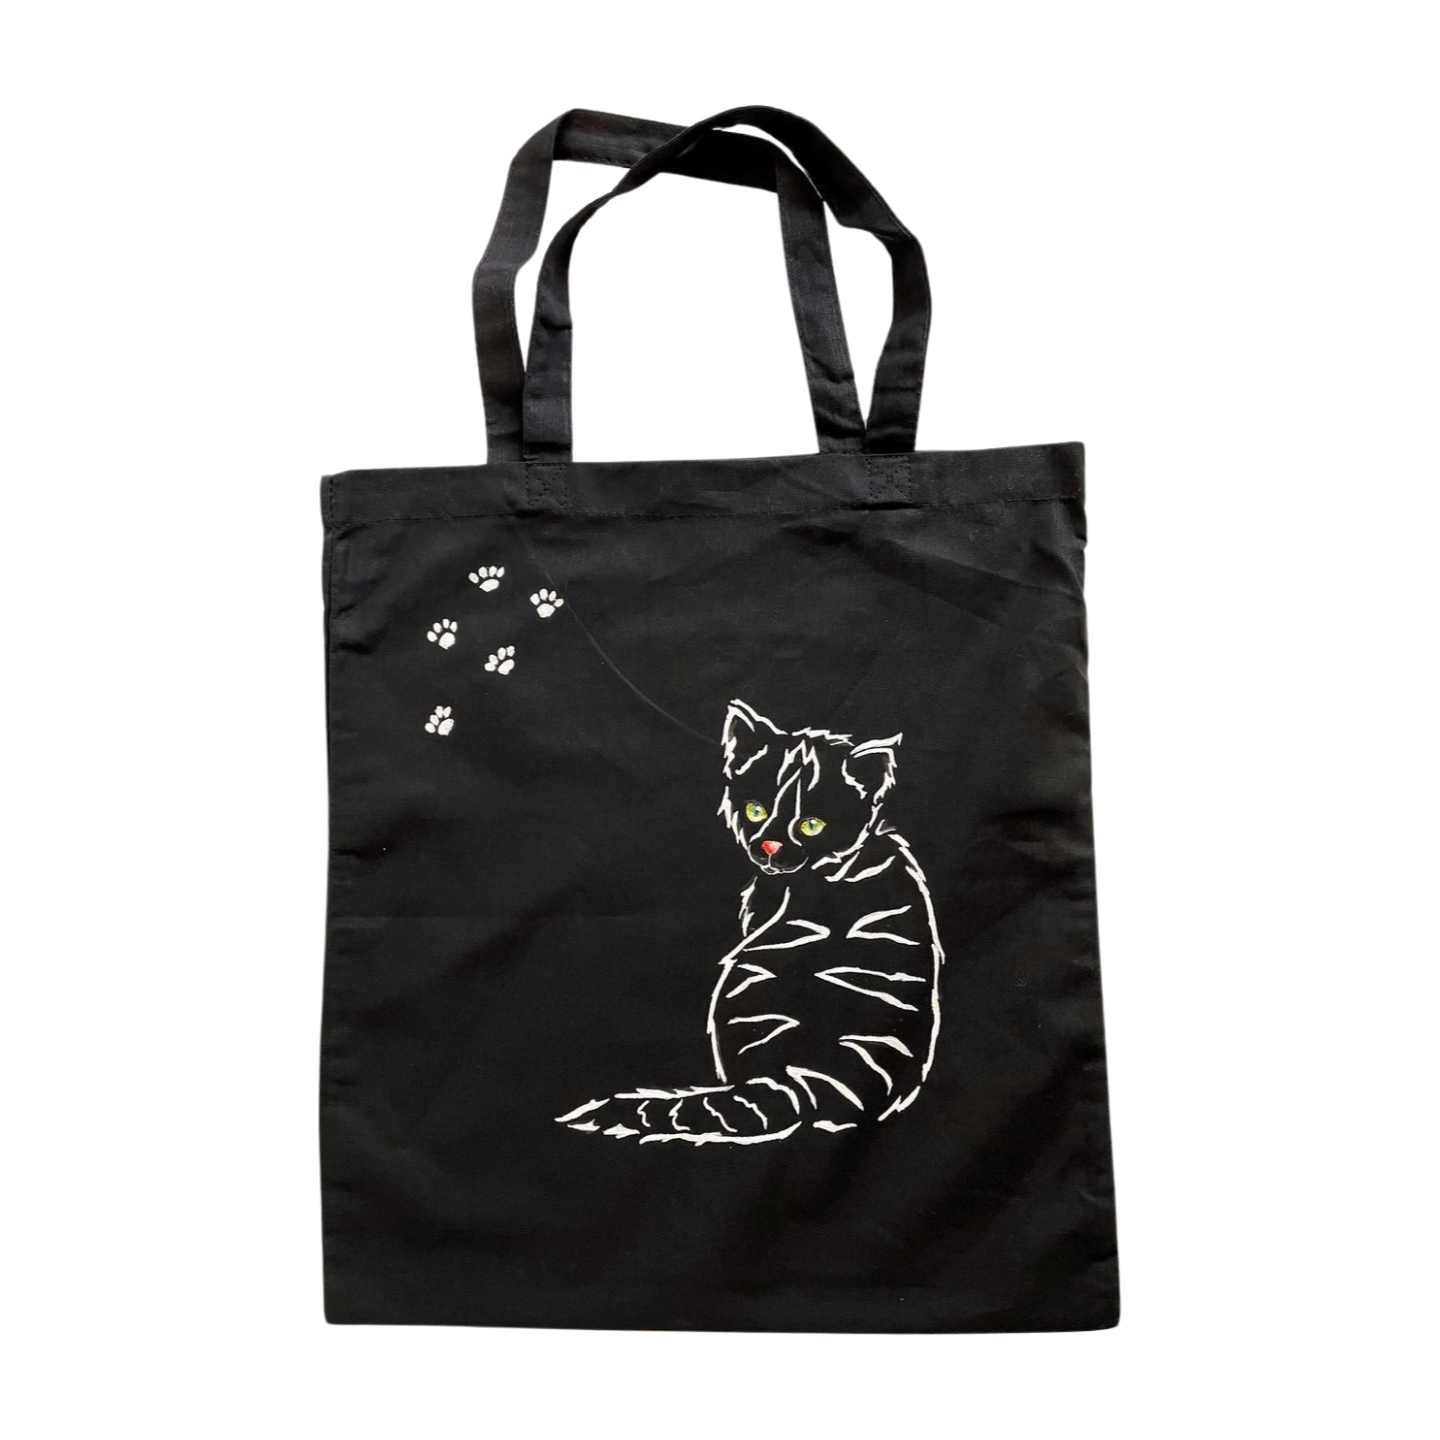 Tote bag noir avec chat peint à la main anses courtes (1)